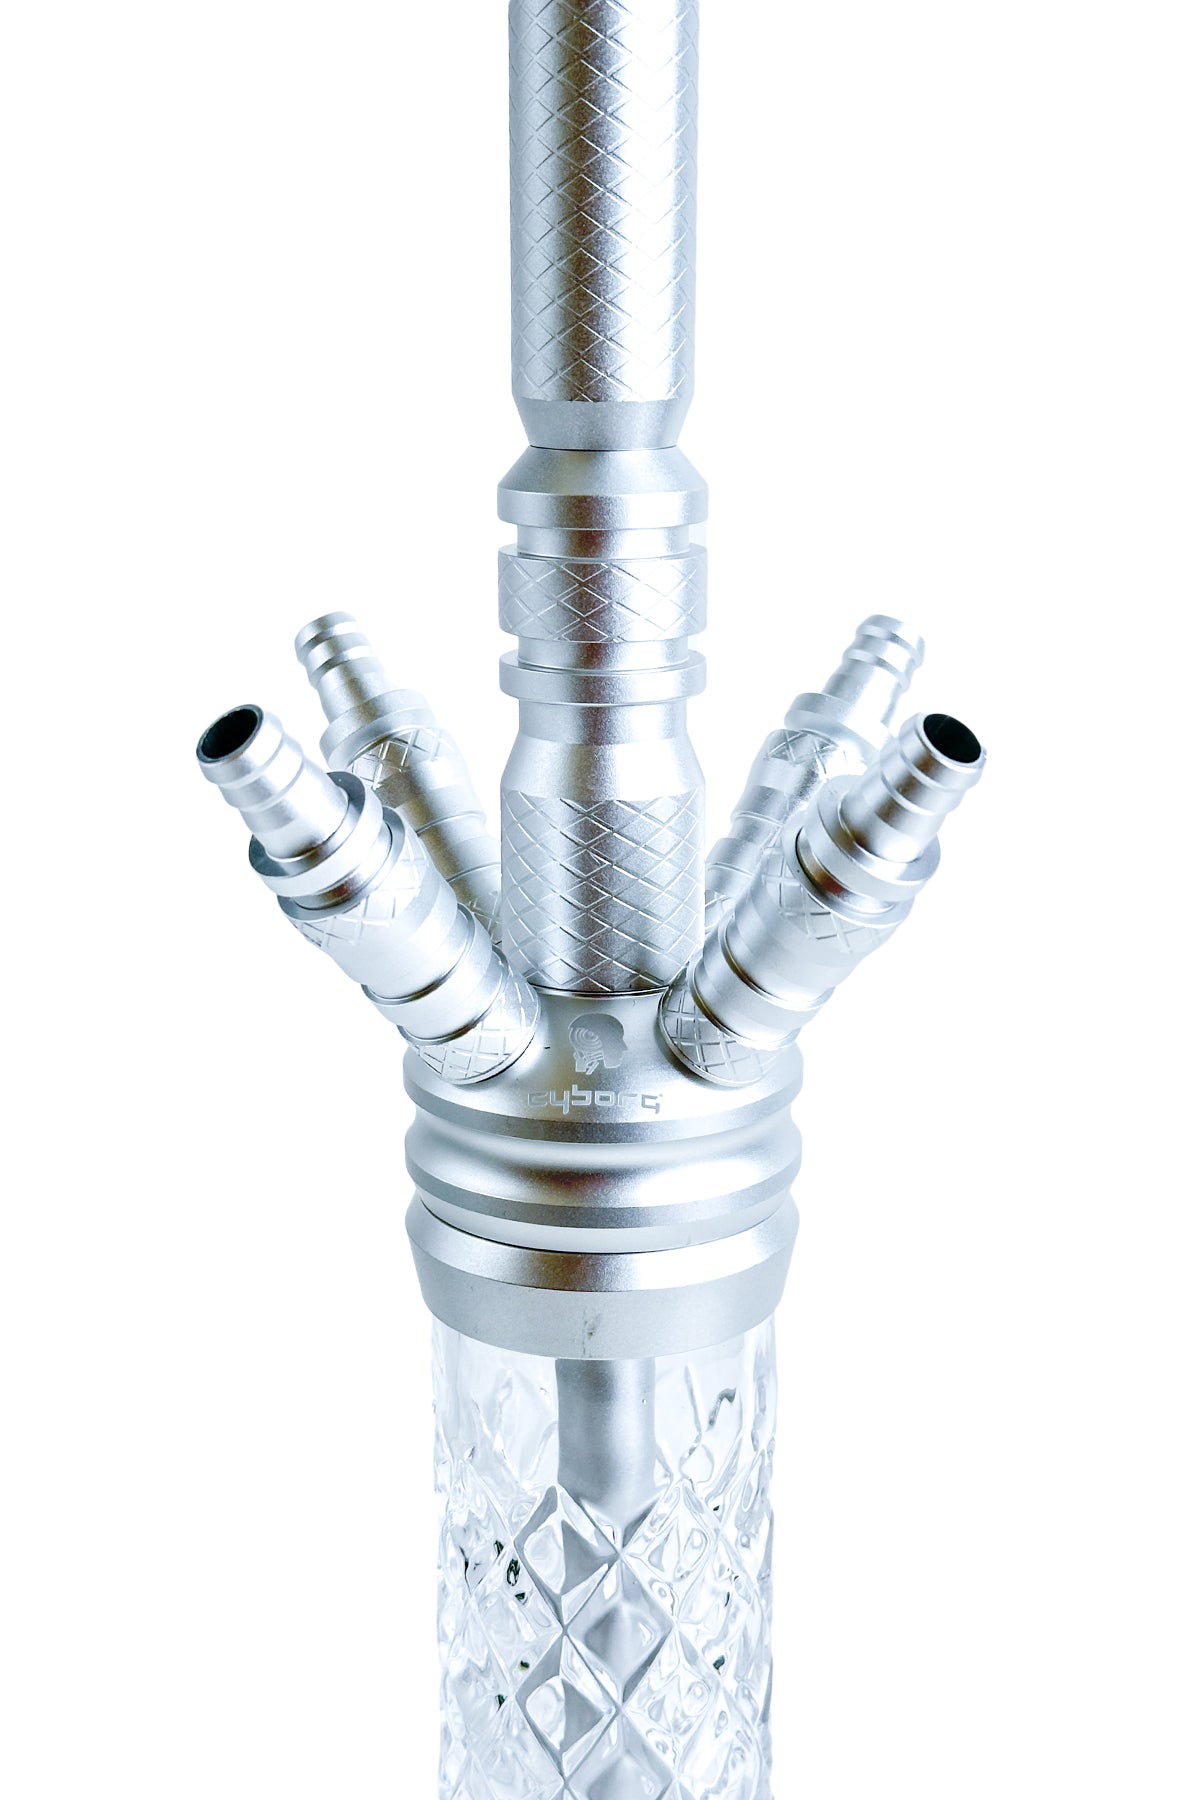 Vodní dýmka - Cyborg, Dorminator Soudi Silver S1